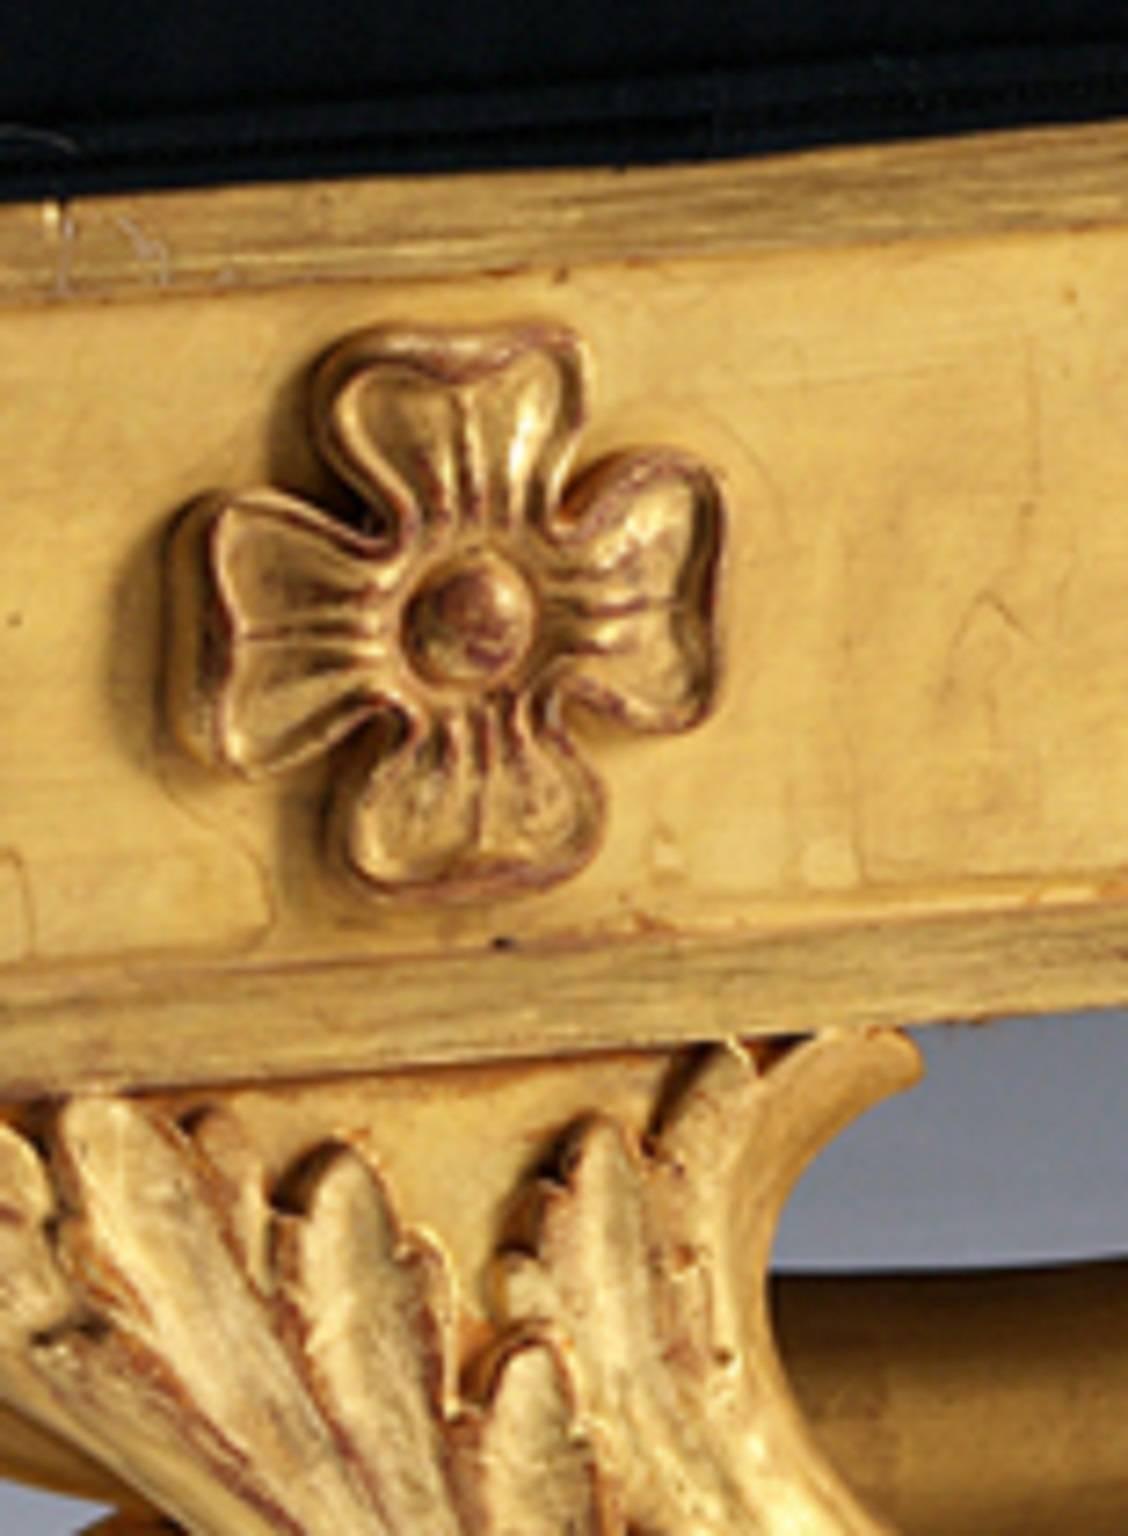 Ein vergoldeter Regency-Fenstersitz aus Holz, dessen getäfelter Fries mit geschnitzten Paterae verziert ist und von einem naturalistisch geschnitzten 